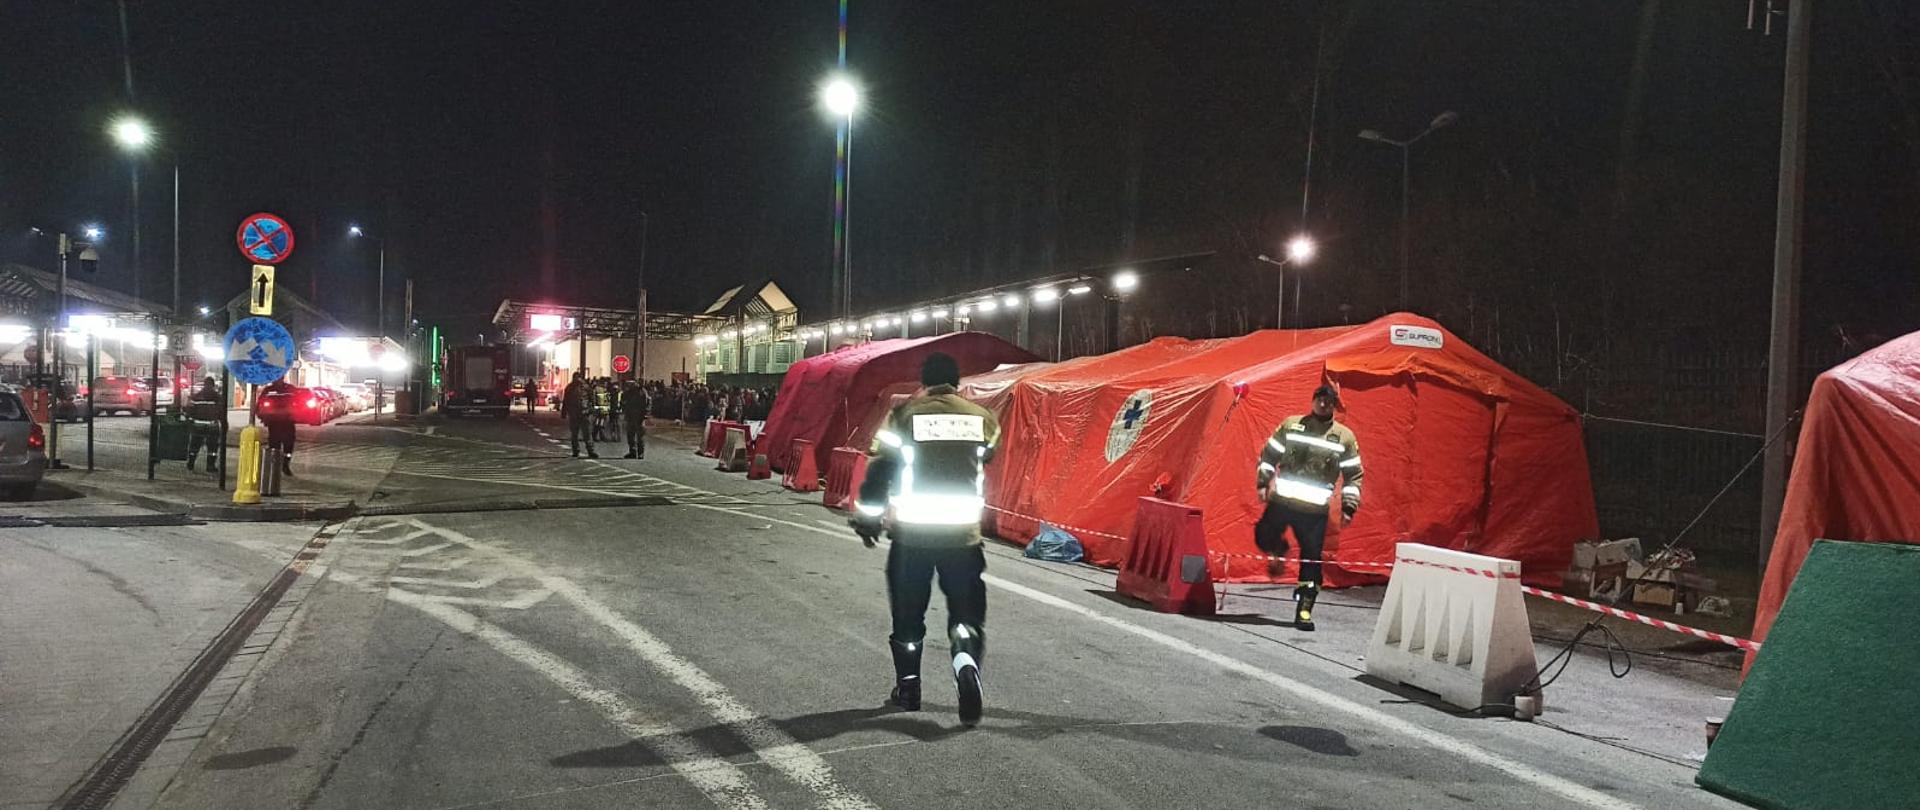 Przygotowanie namiotów dla uchodźców przekraczających granicę 